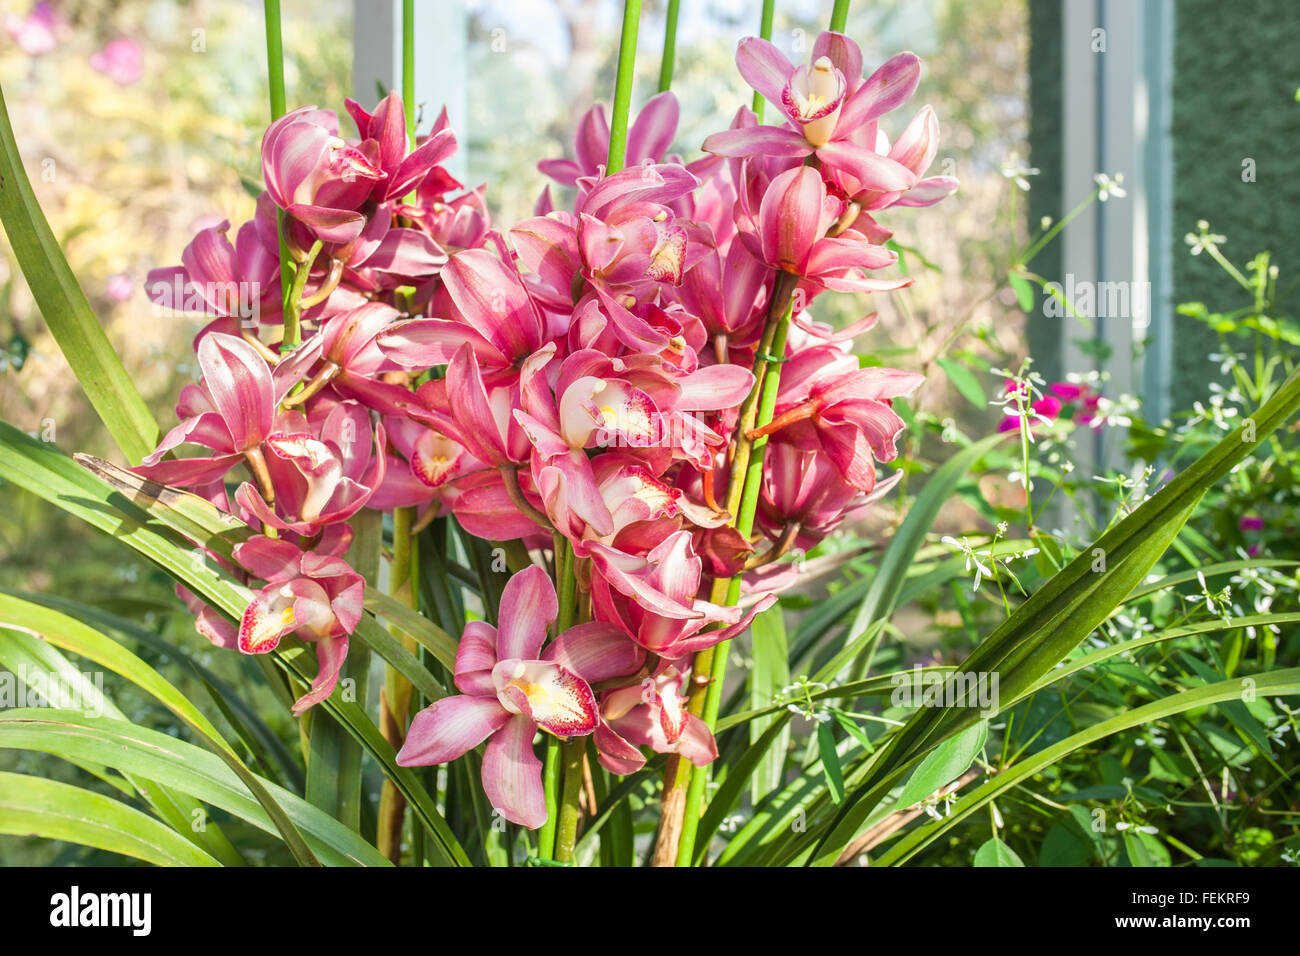 Orchidee rot gesprenkelt den Namen der Blume wegen Ähnlichkeit der Blume. Stockfoto